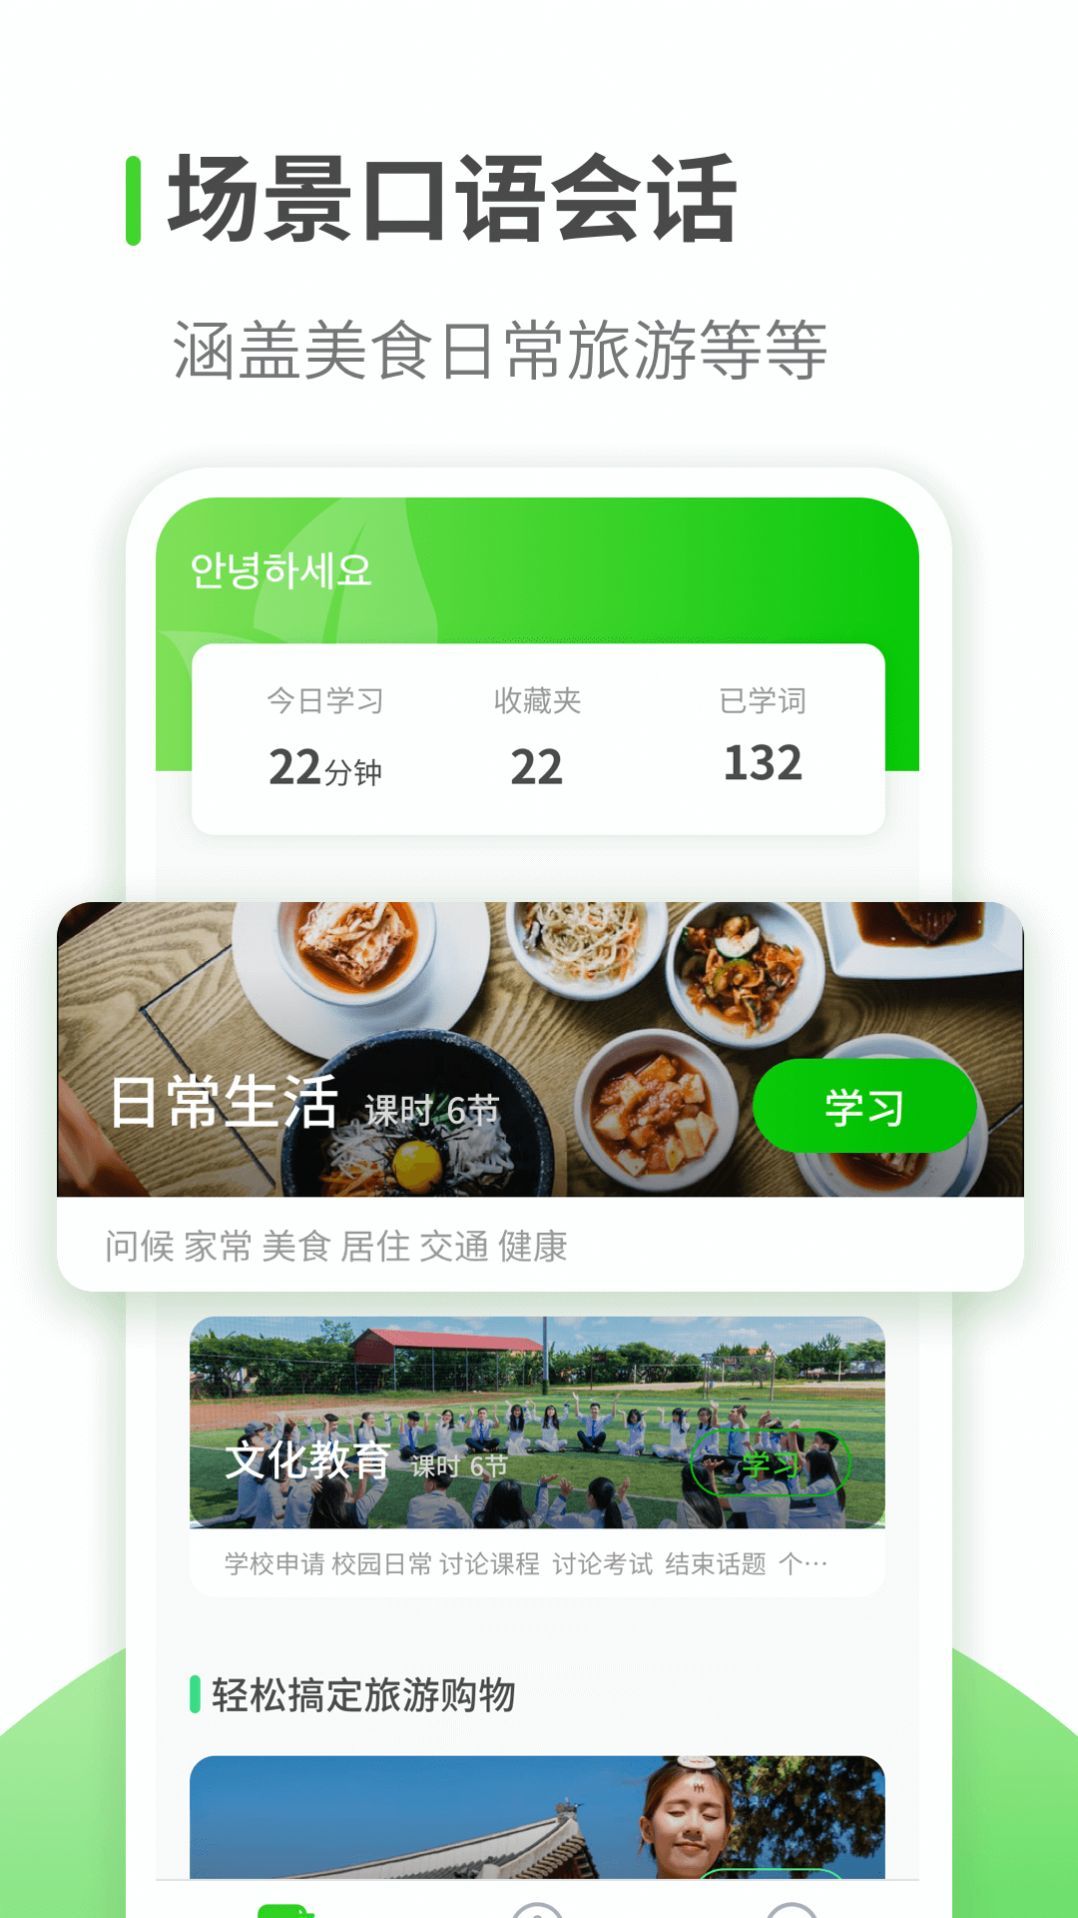 喵喵韩语学习无广告版app下载-喵喵韩语学习官网版app下载